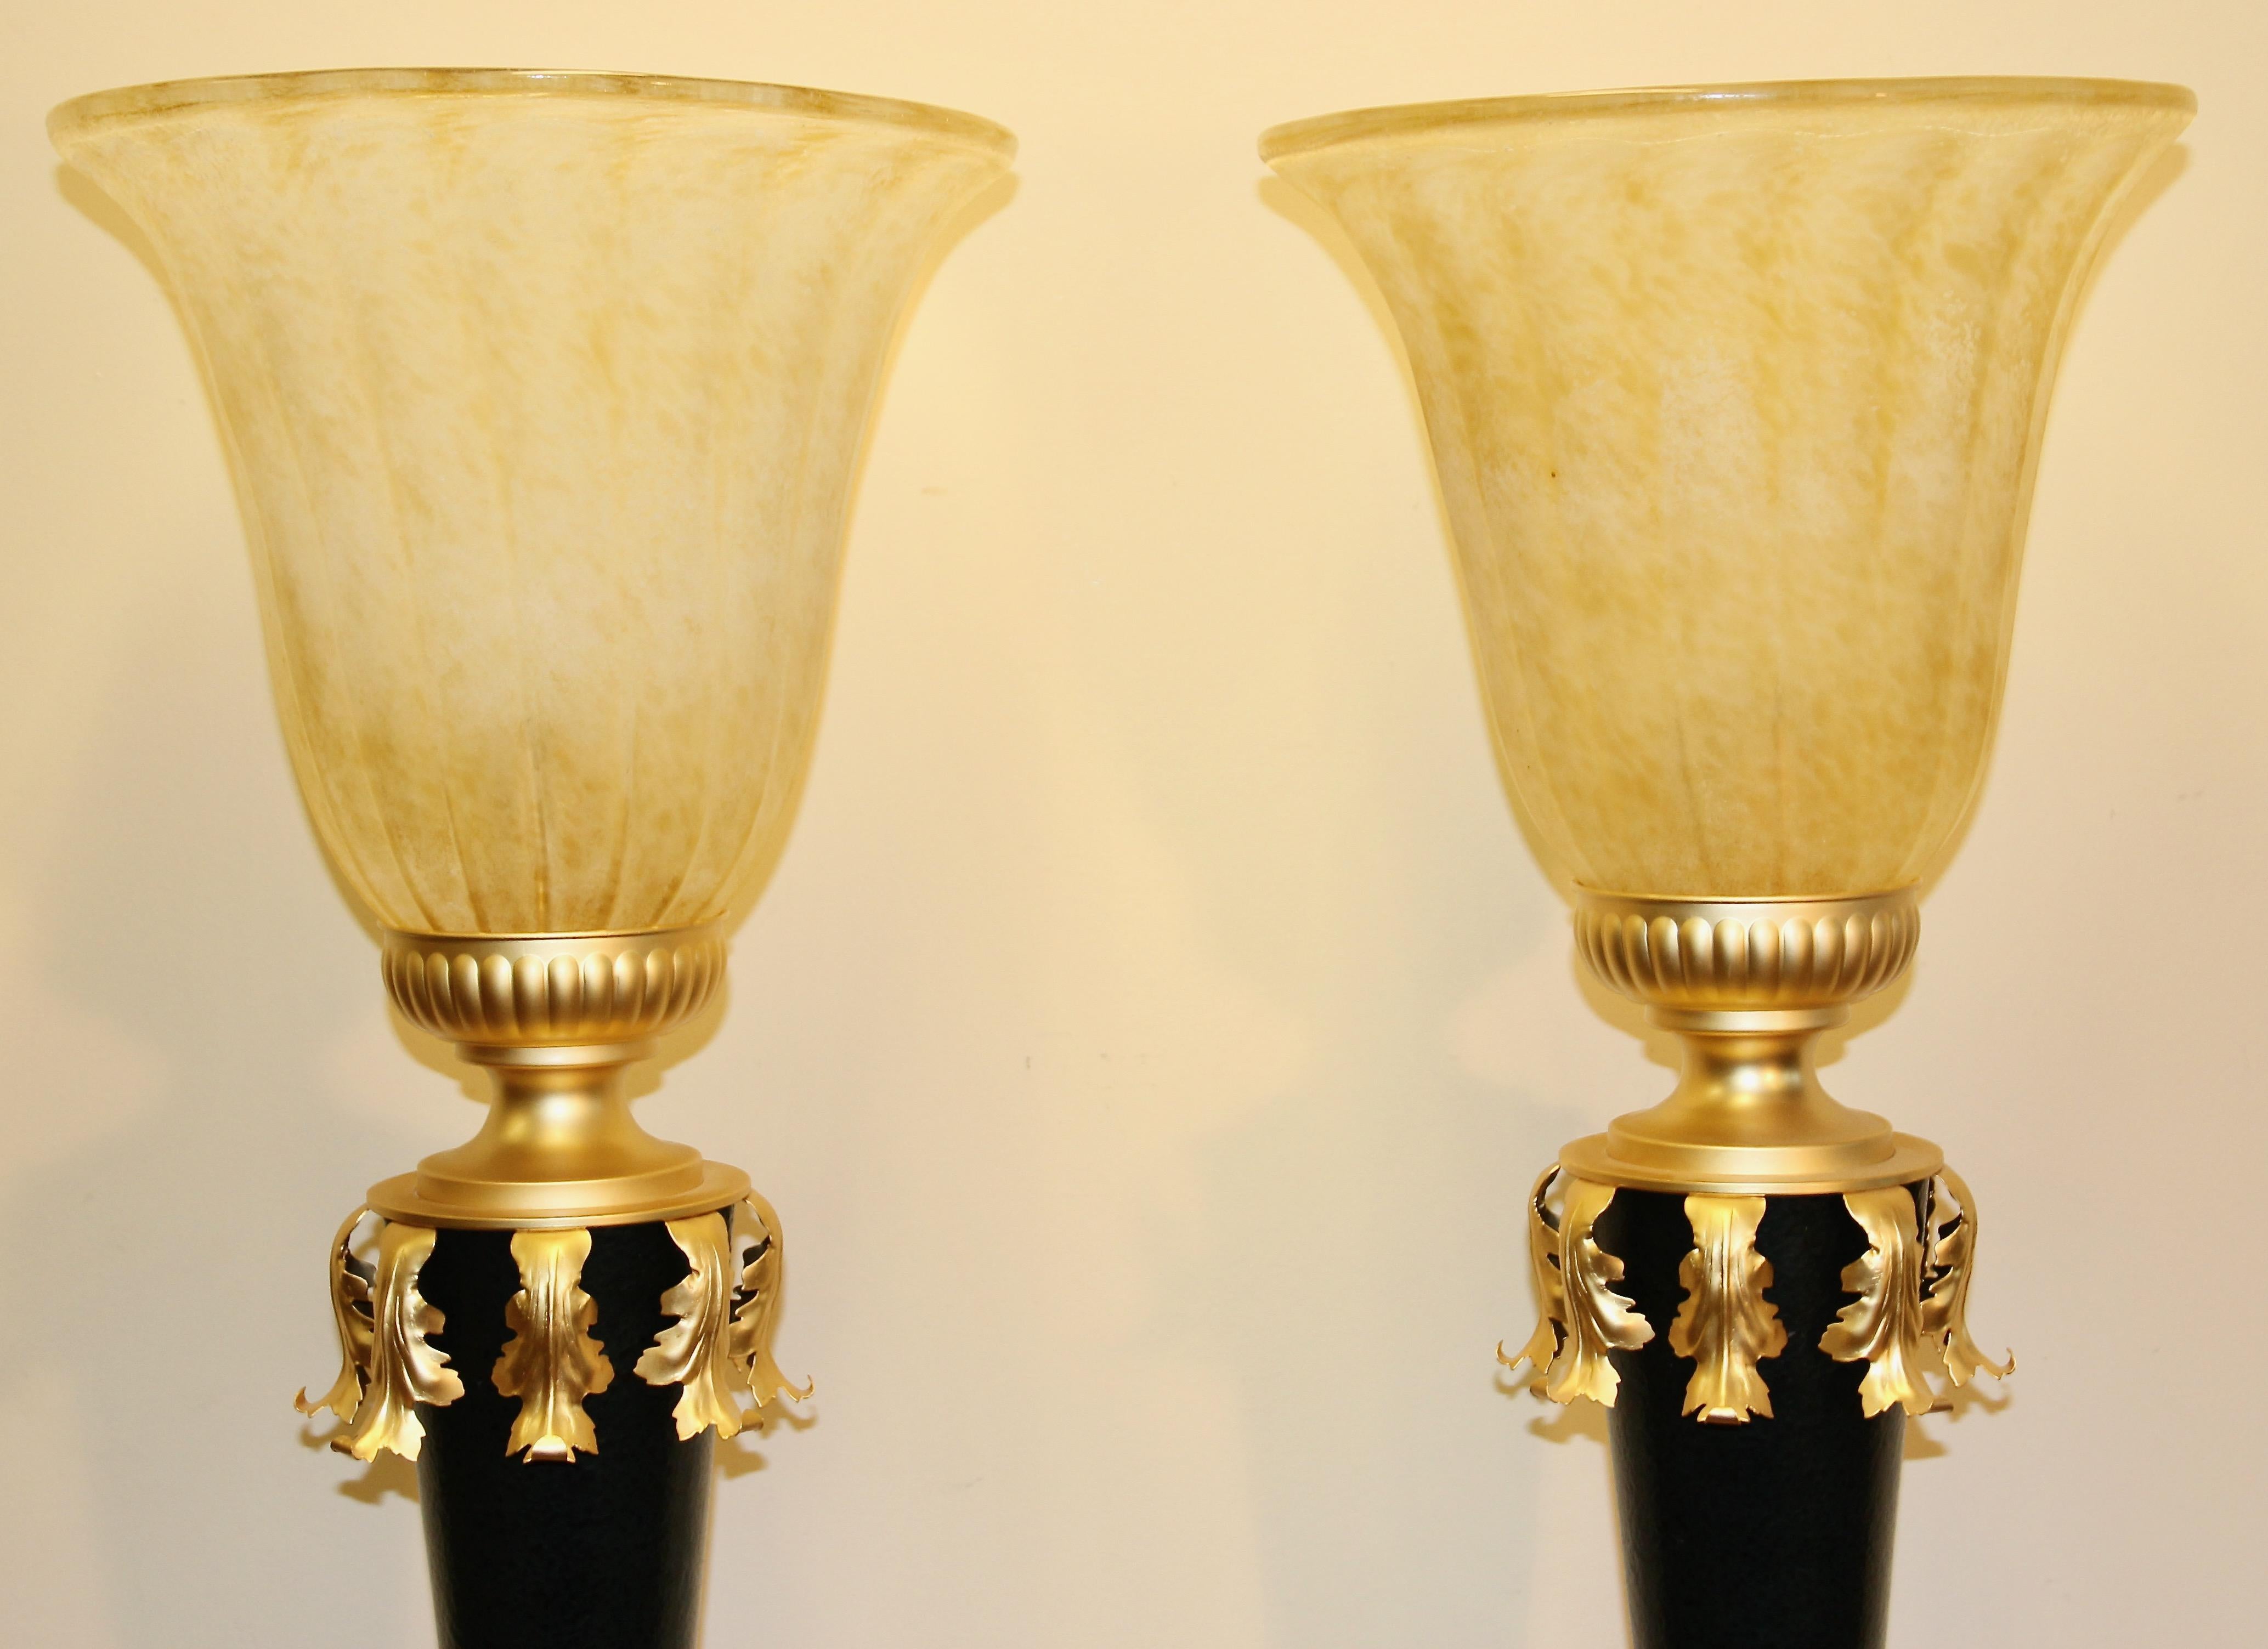 Sehr dekorative, schwere und hochwertige Tischlampen.

Minimale Gebrauchsspuren.
Durchmesser der Glasschale 34 cm (13,38 Zoll).